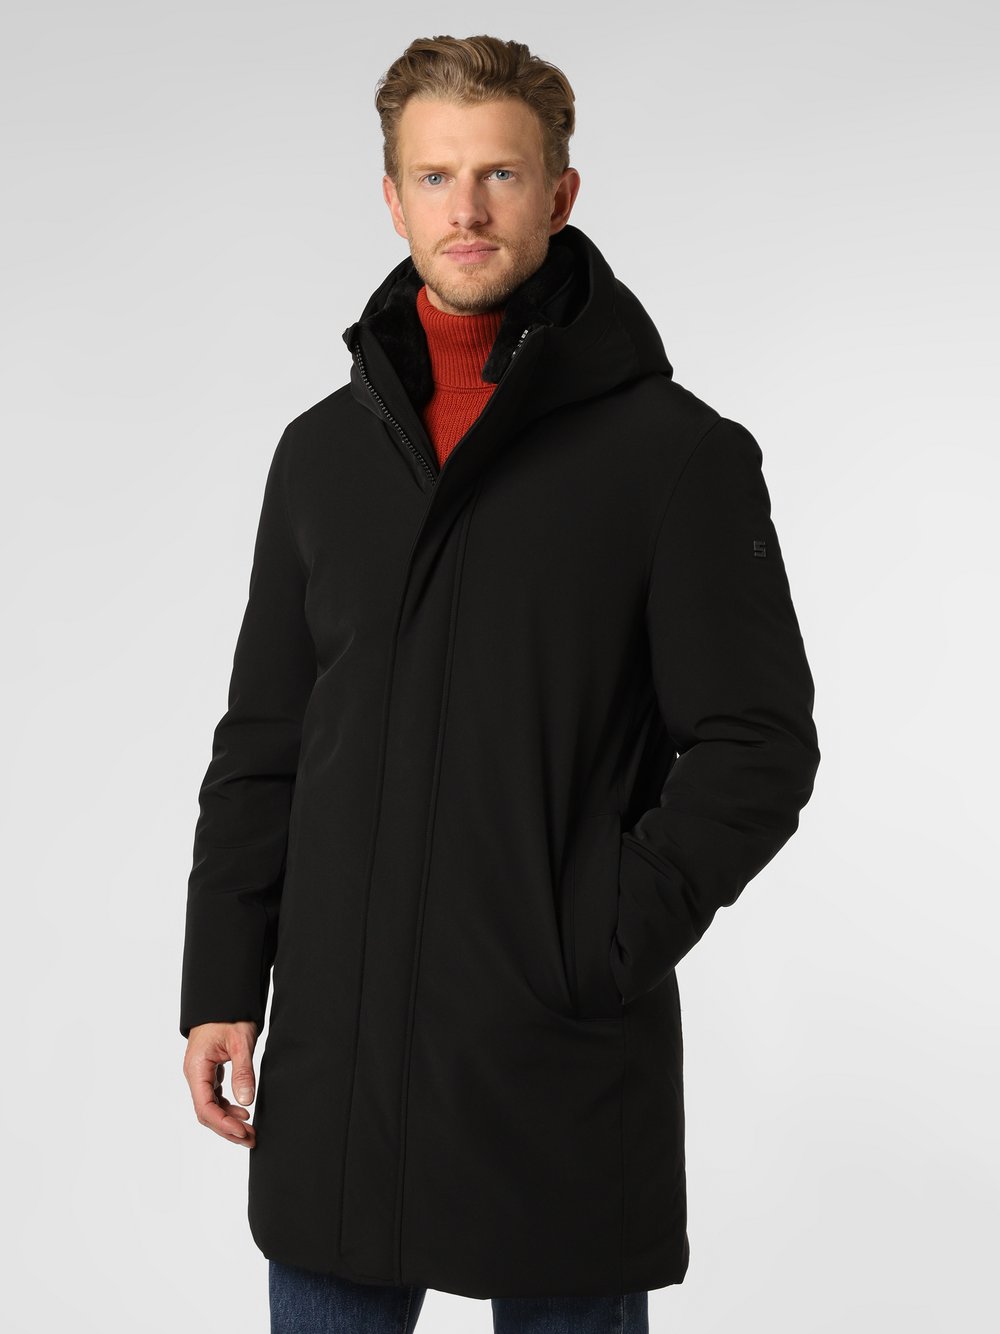 Cinque - Męski płaszcz funkcyjny – CIDawson, czarny